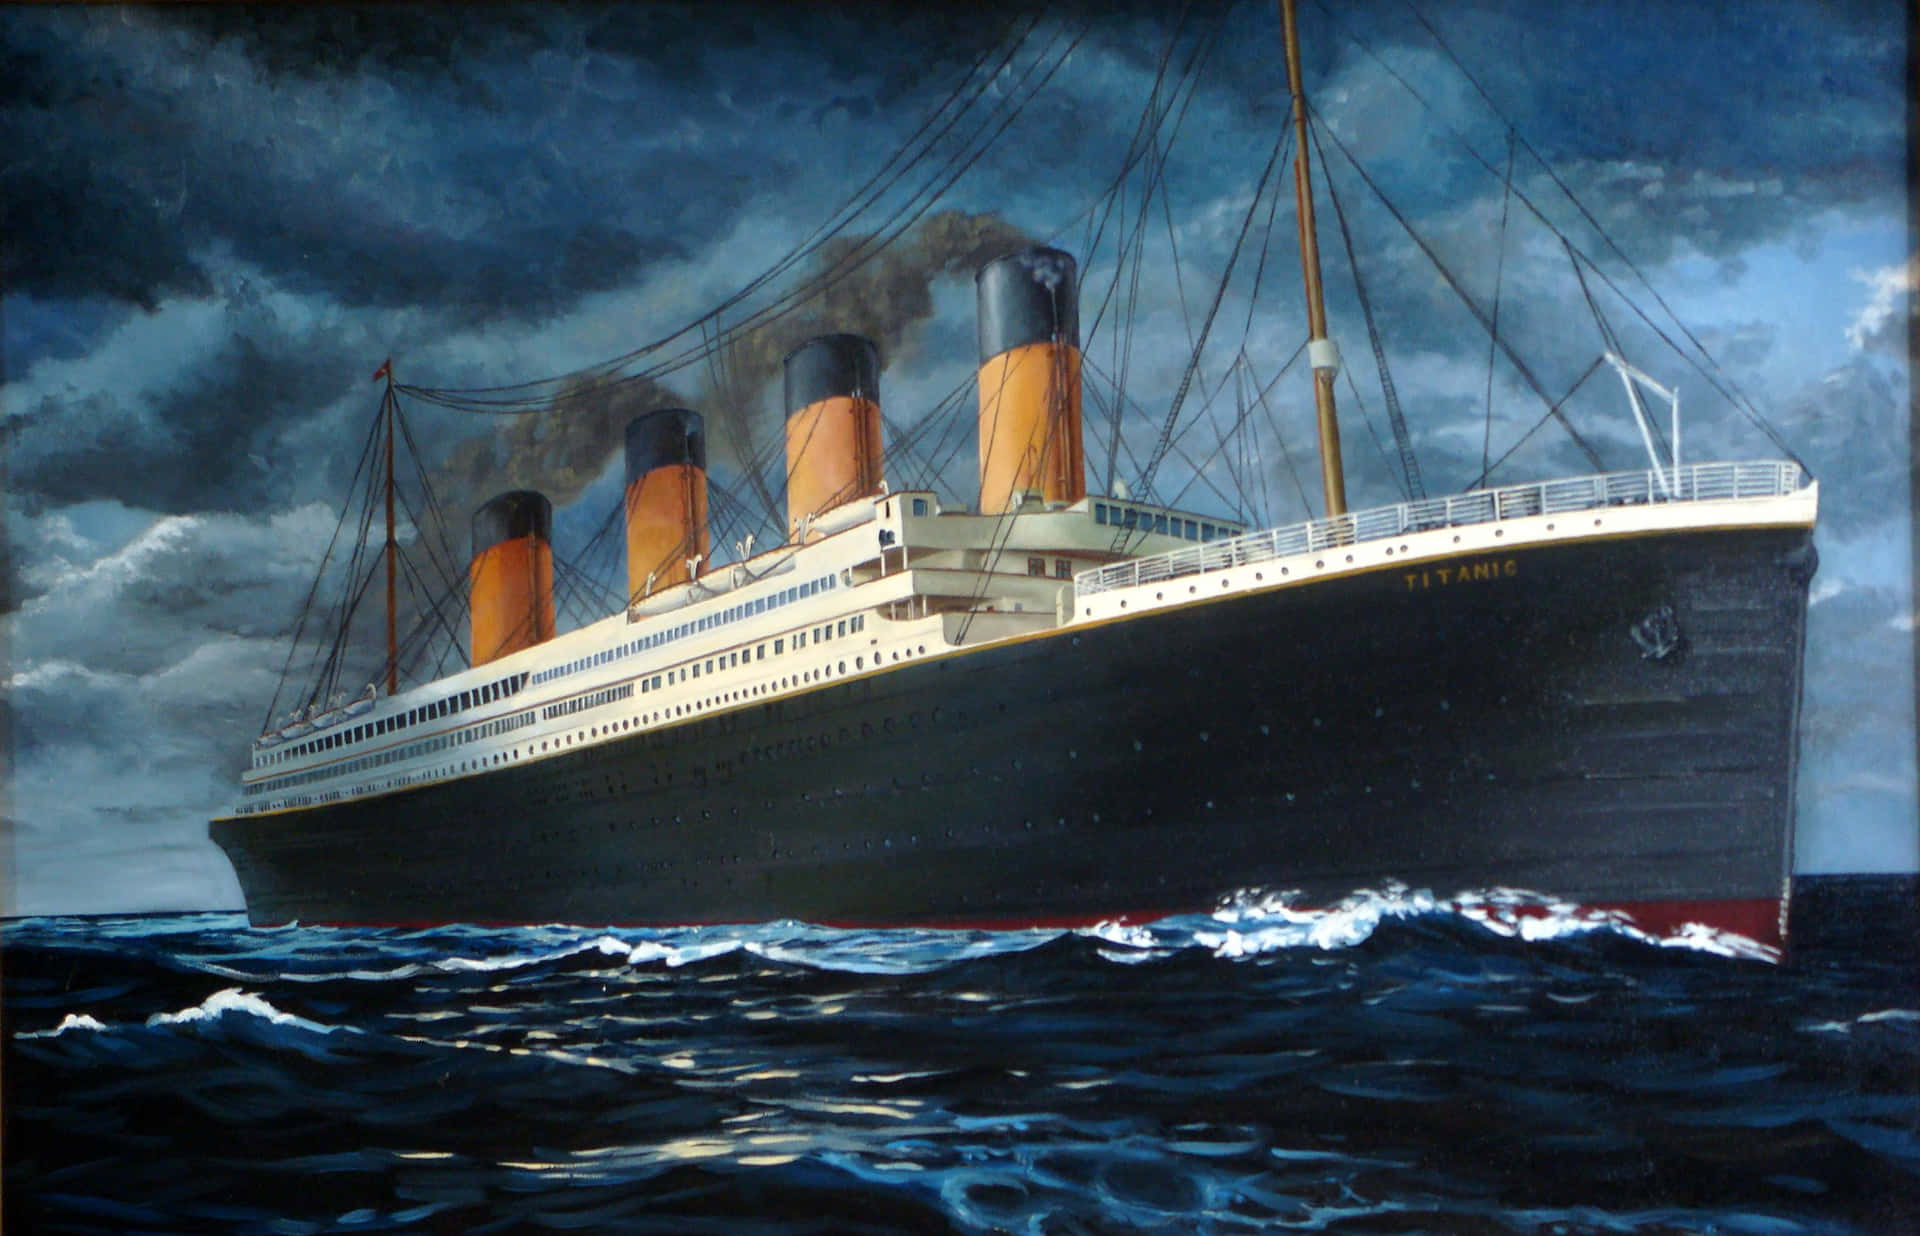 L'iconicanave Titanic Durante Il Suo Ultimo Viaggio.